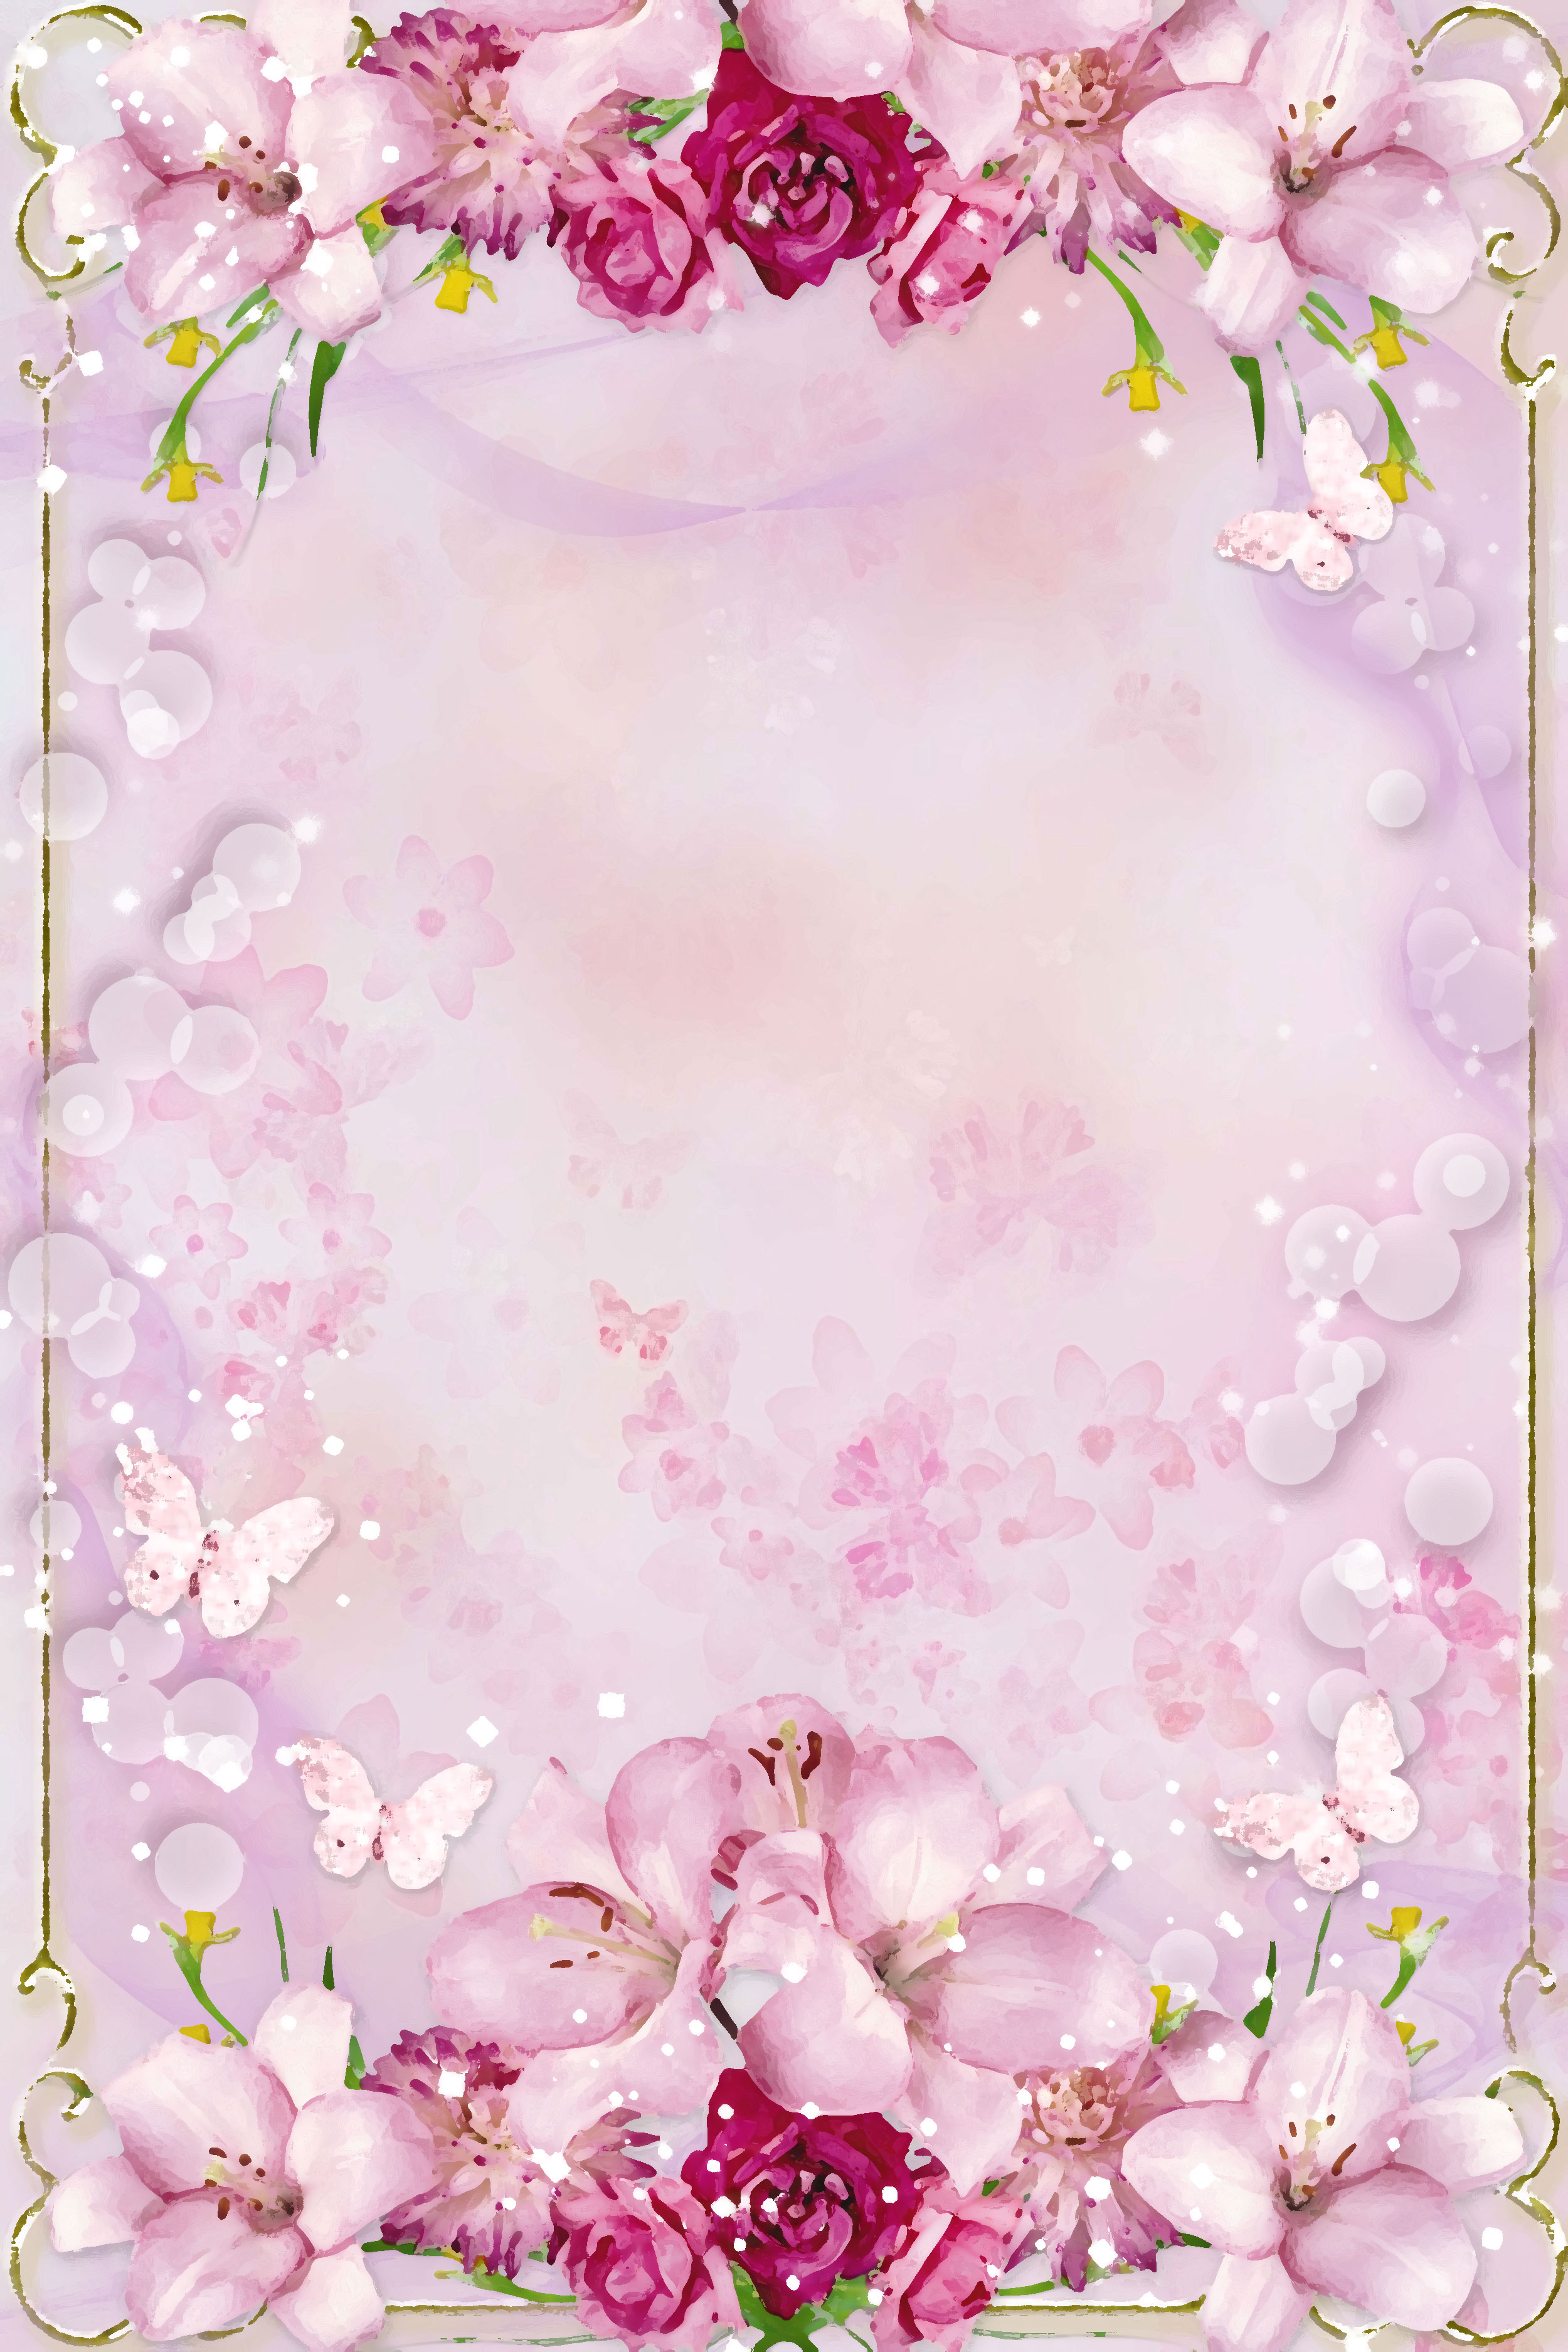 ピンクの花のイラスト フリー素材 壁紙 背景no 588 ピンク 赤紫 蝶 光粒